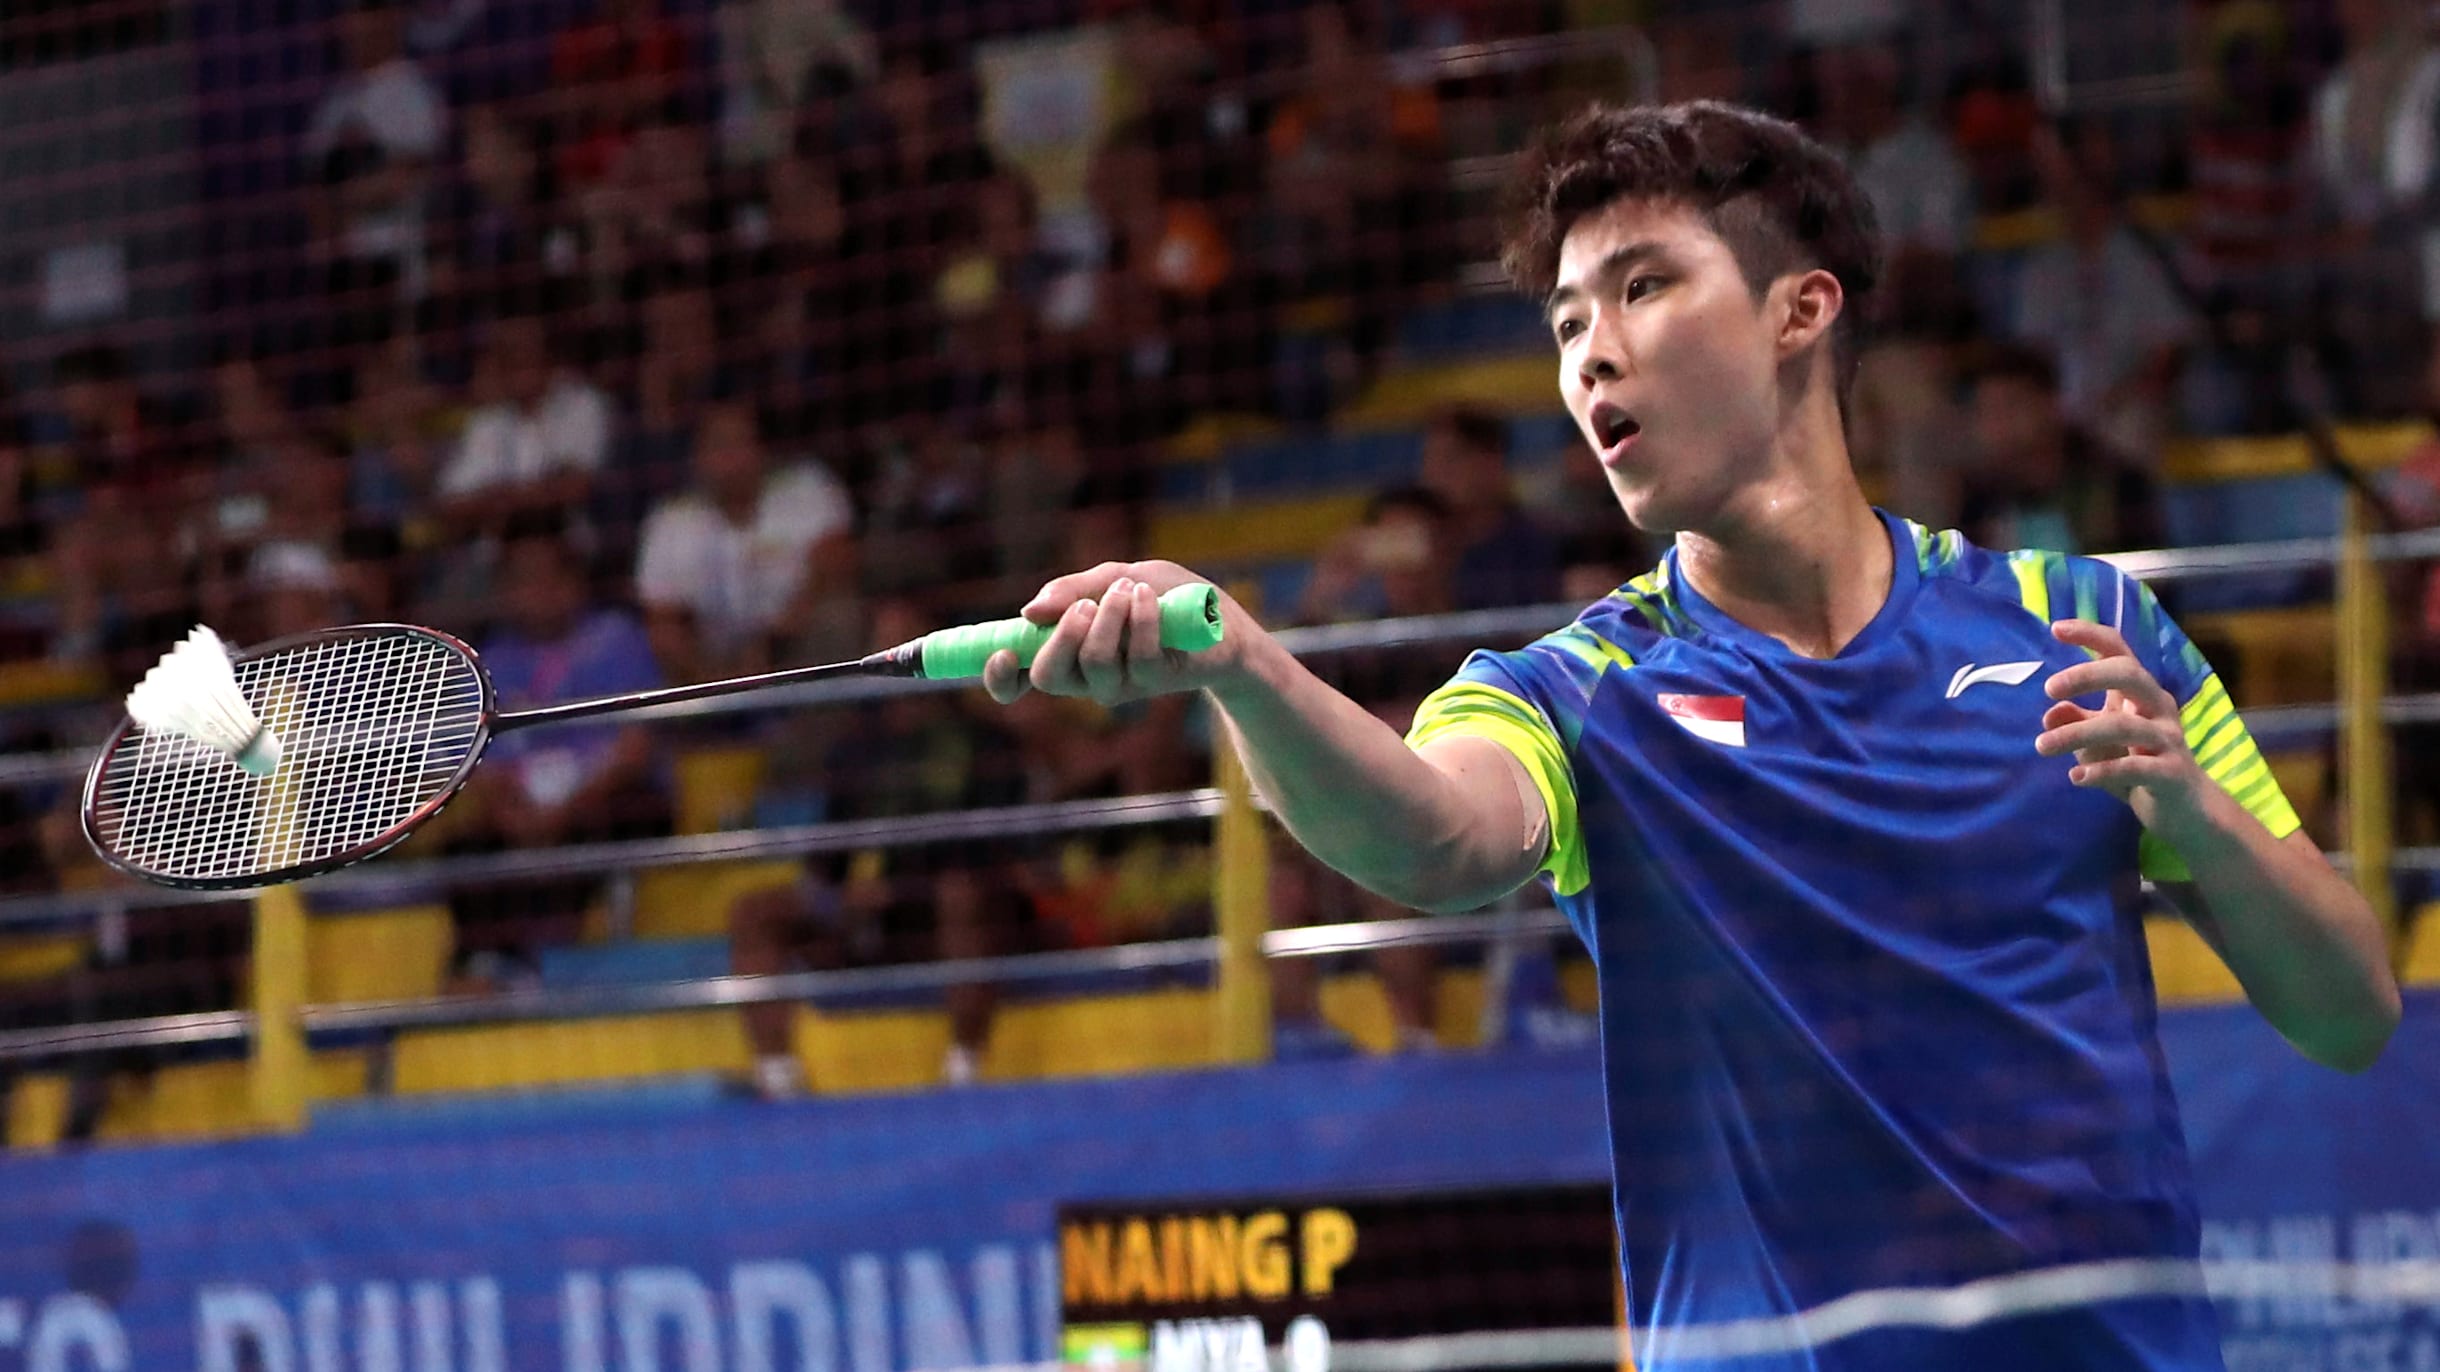 Loh Kean Yew Badminton world champ eases through at India Open